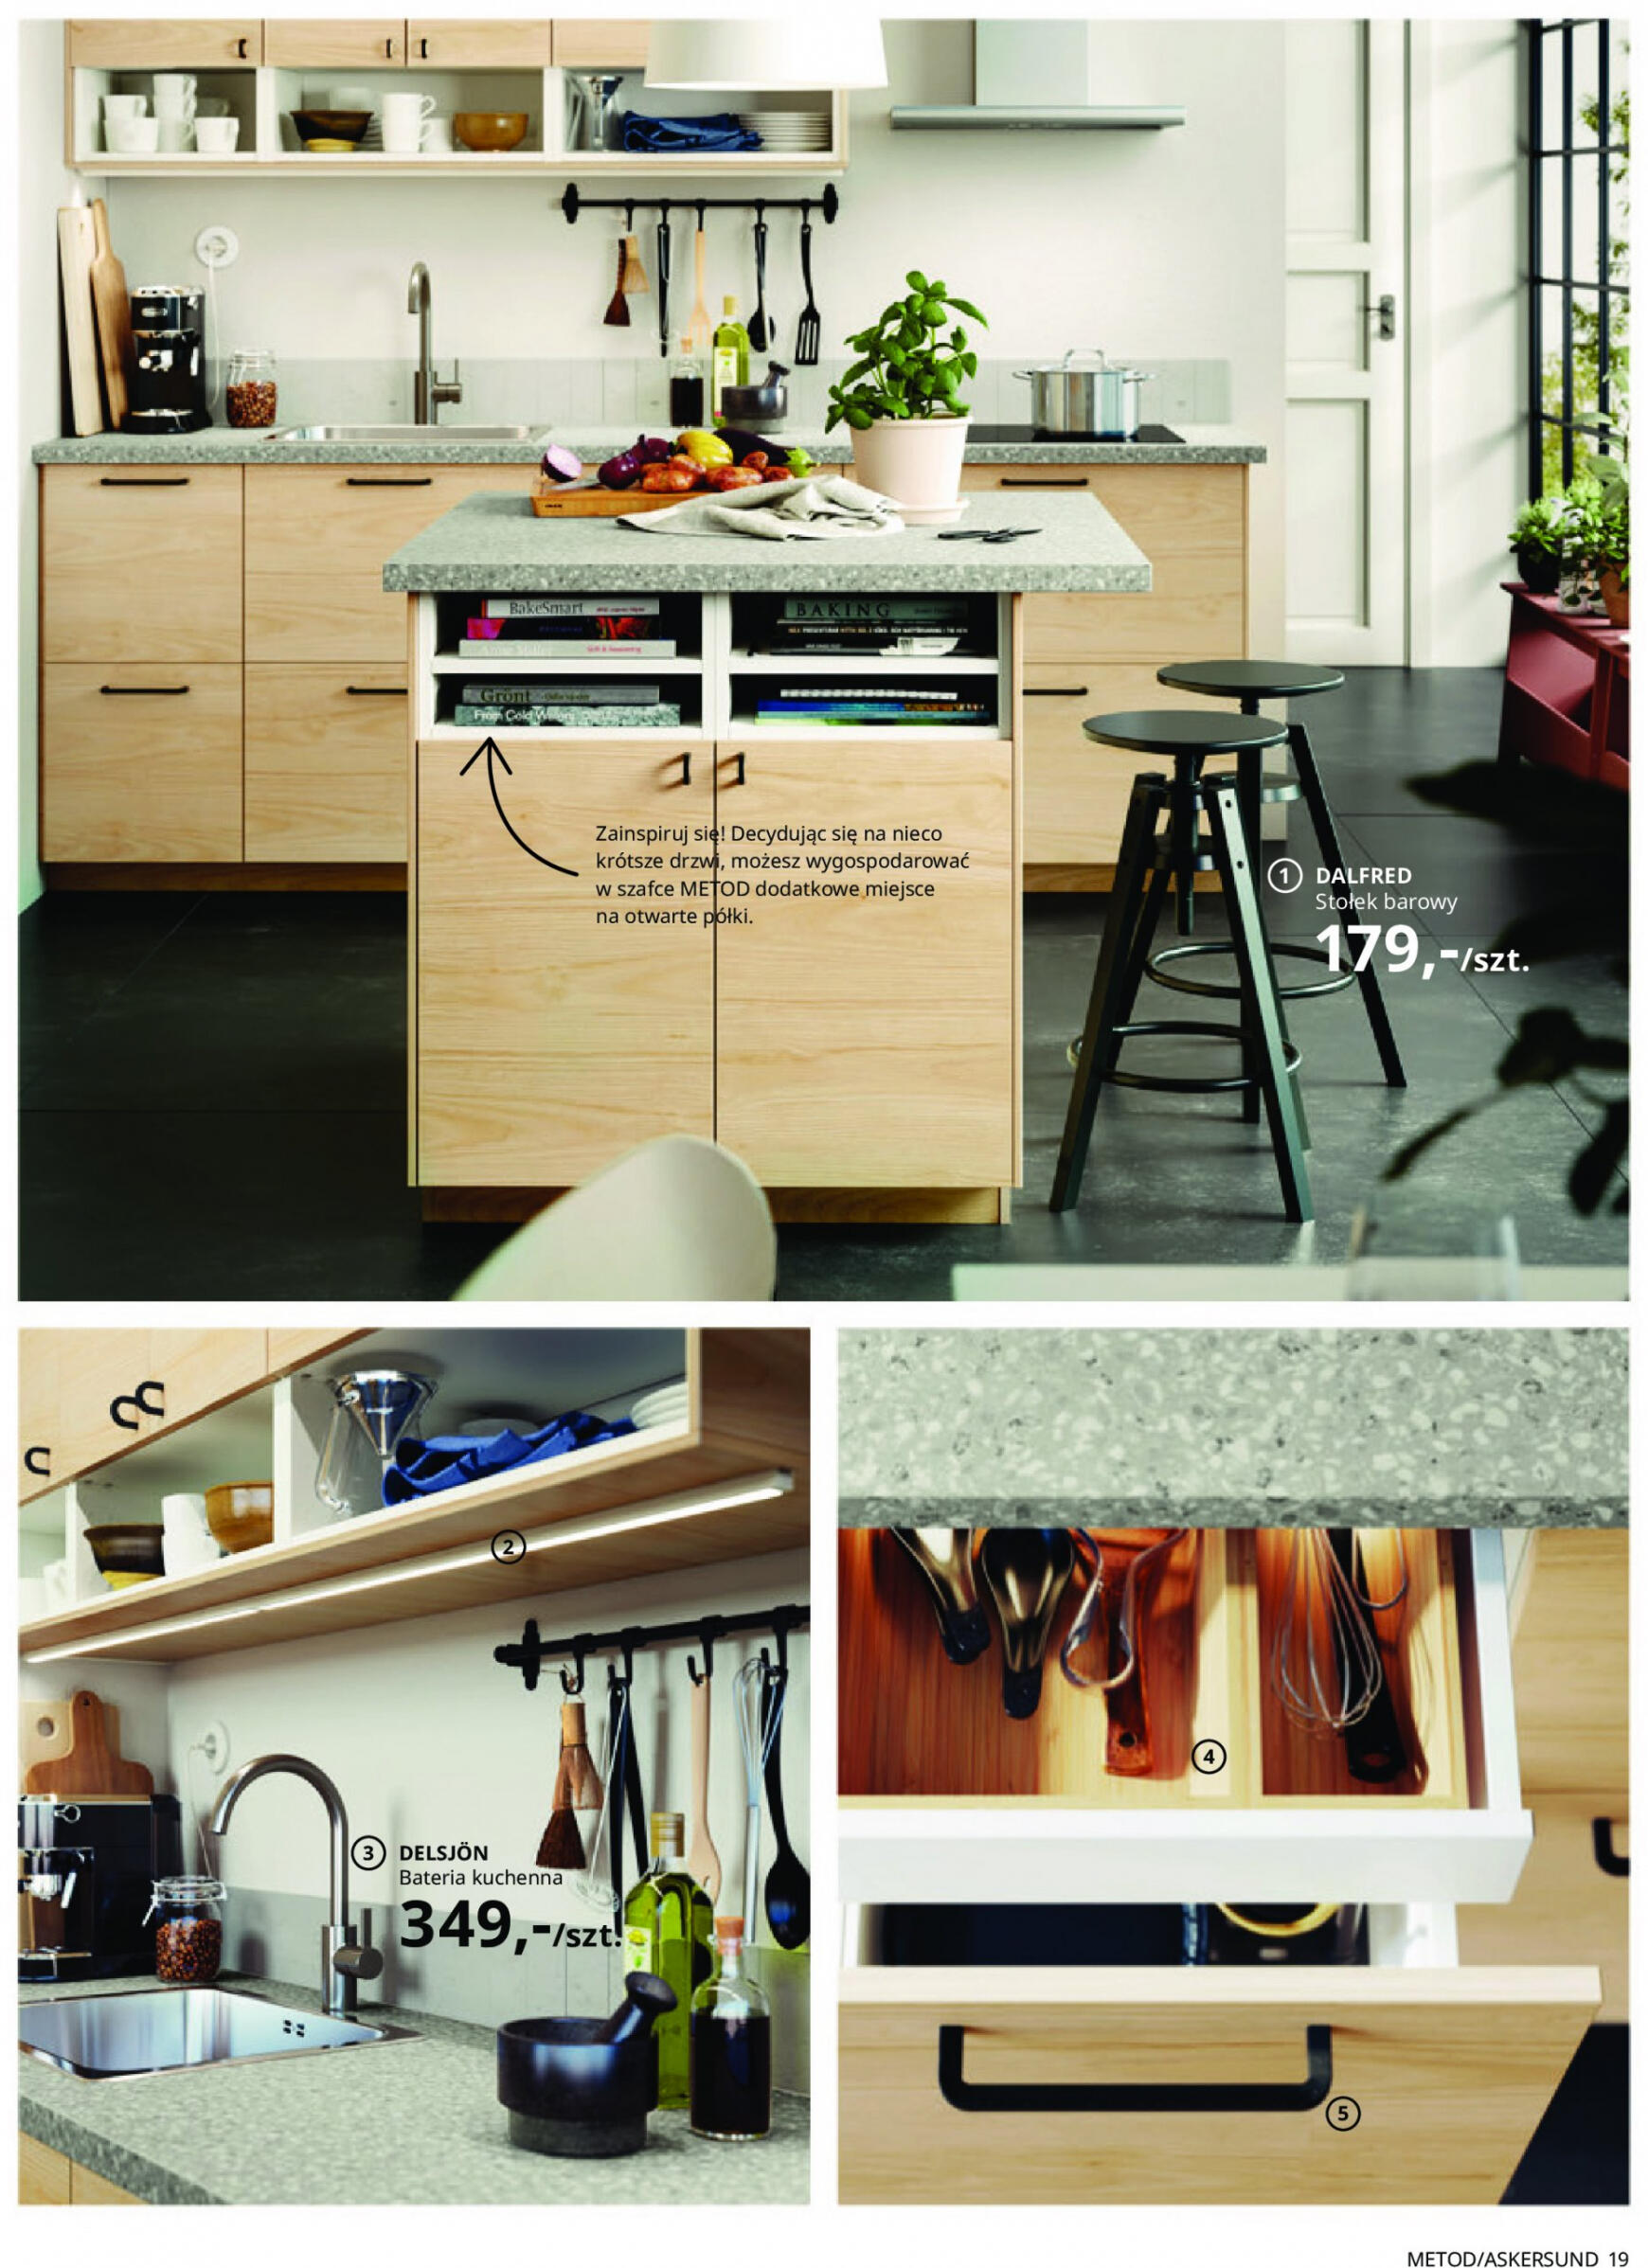 ikea - IKEA - Kuchnie - page: 19